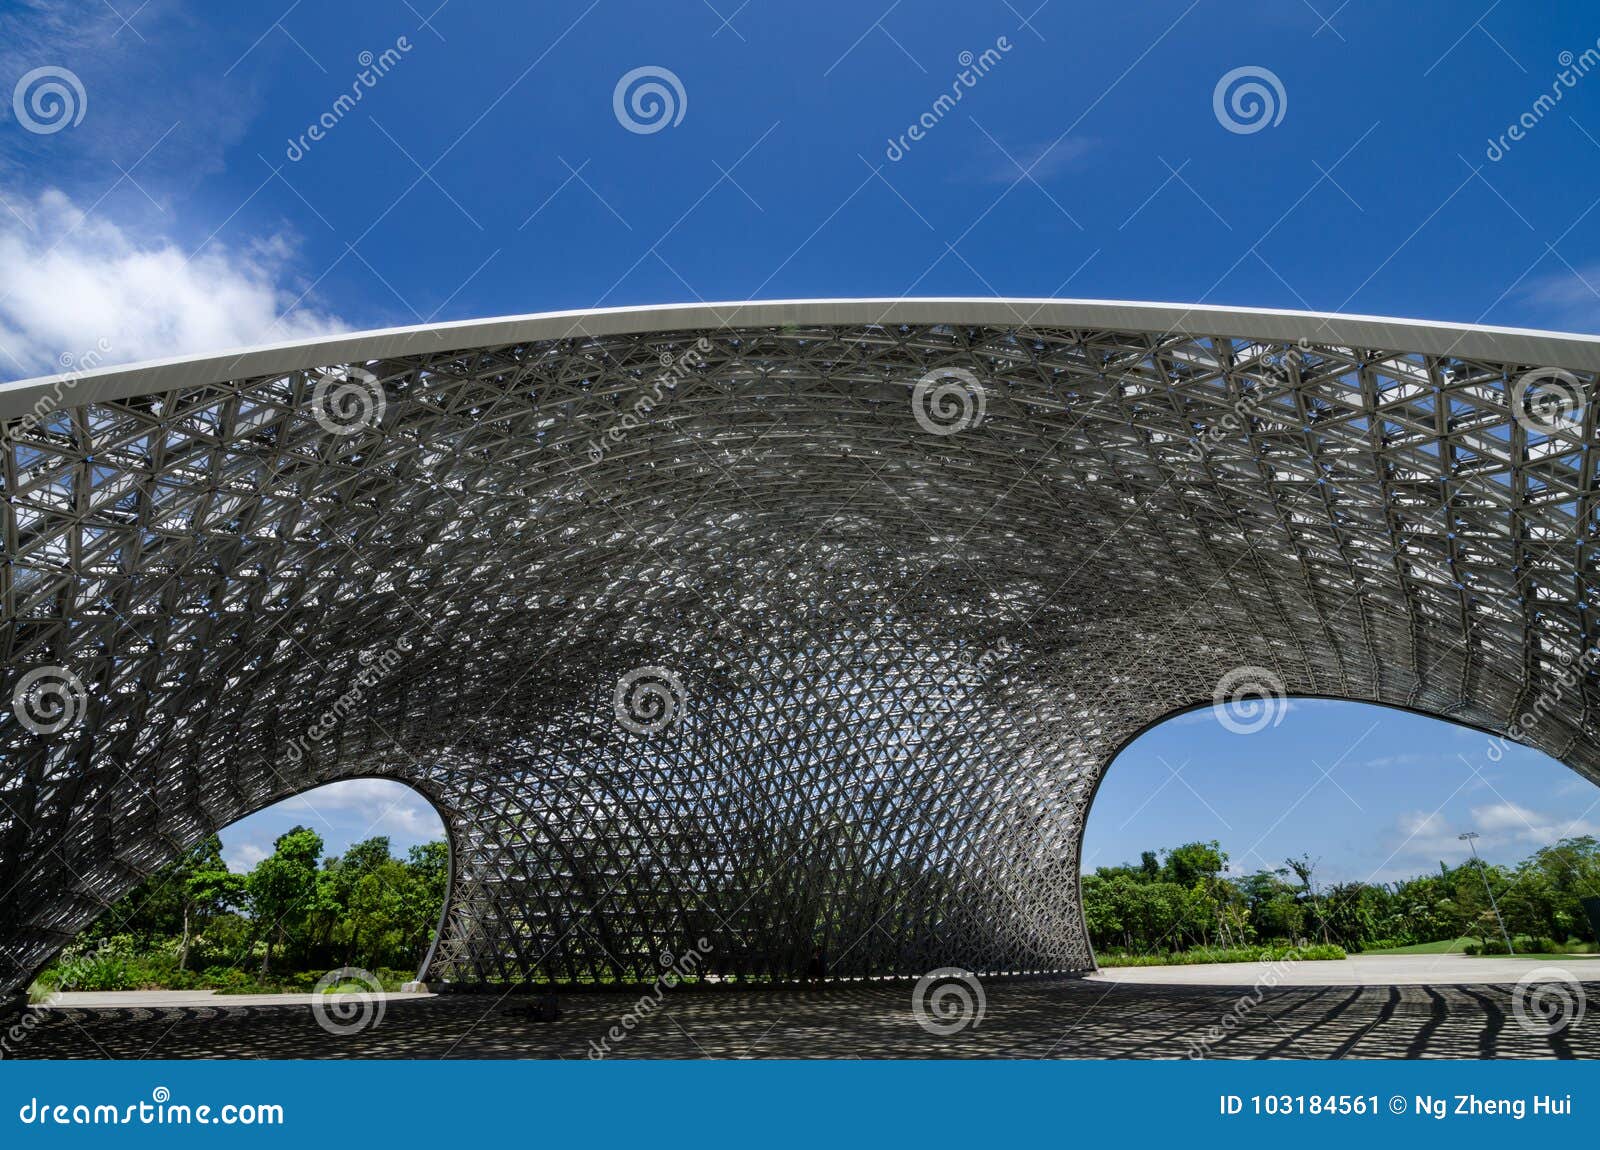 De Baai van de jachthaven, Singapore 16 Juli 2017: Paviljoen voor de Toekomst van ons Tentoonstelling, een licht-filtreert dak met ongeveer 11000 driehoekige aluminiumpanelen Het dak blijft nu als beeldhouwwerk in het park